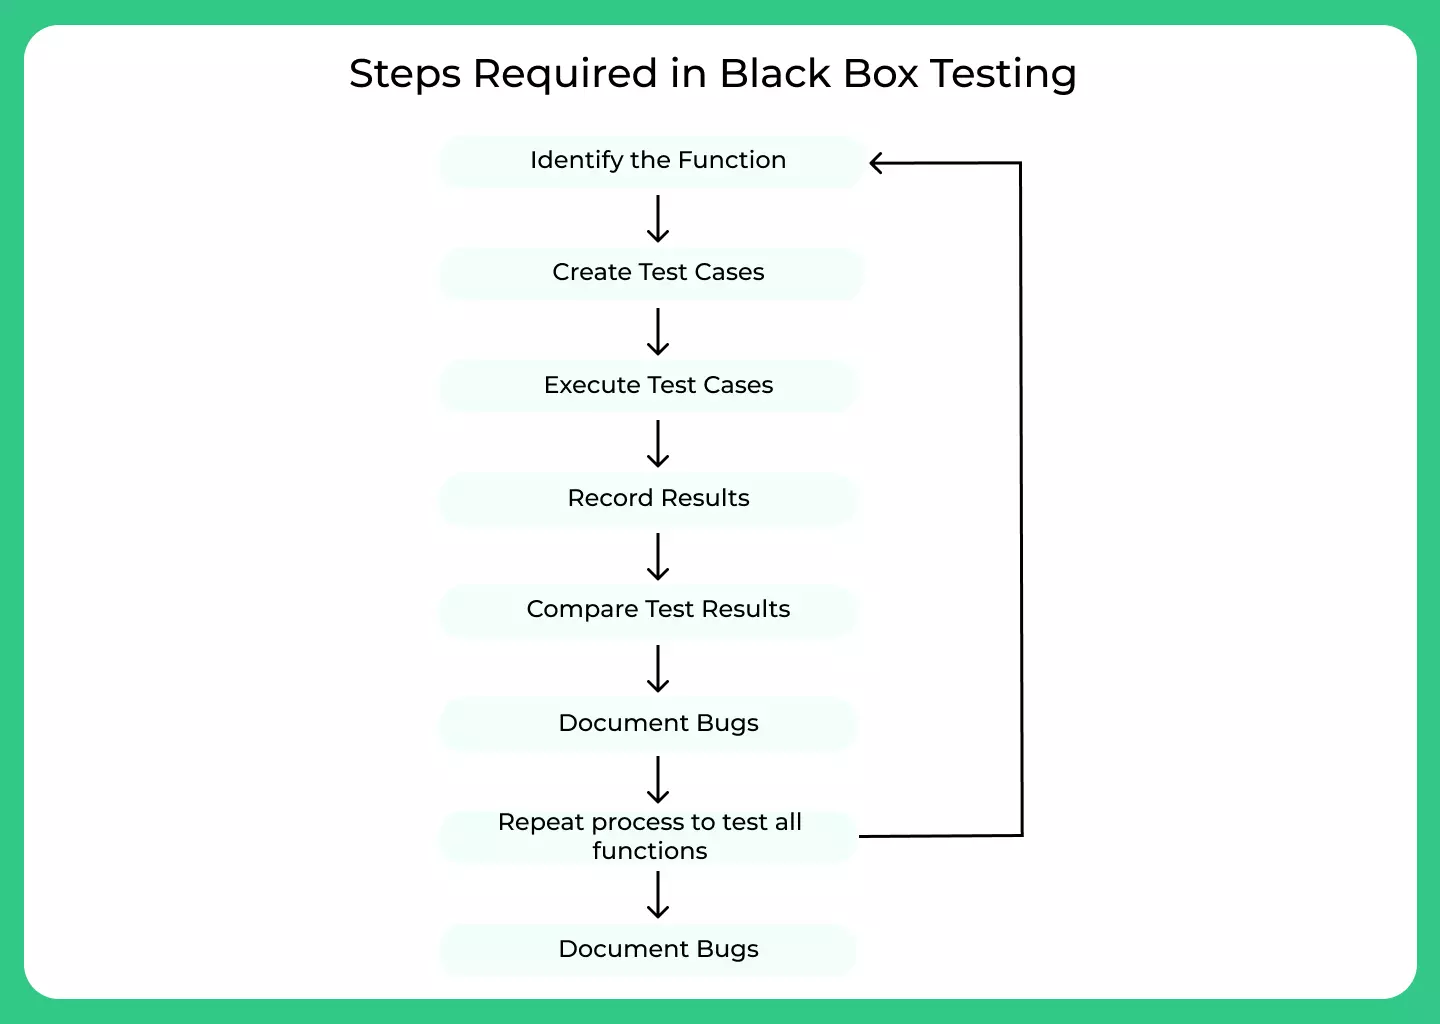 Steps of Black Box Testing